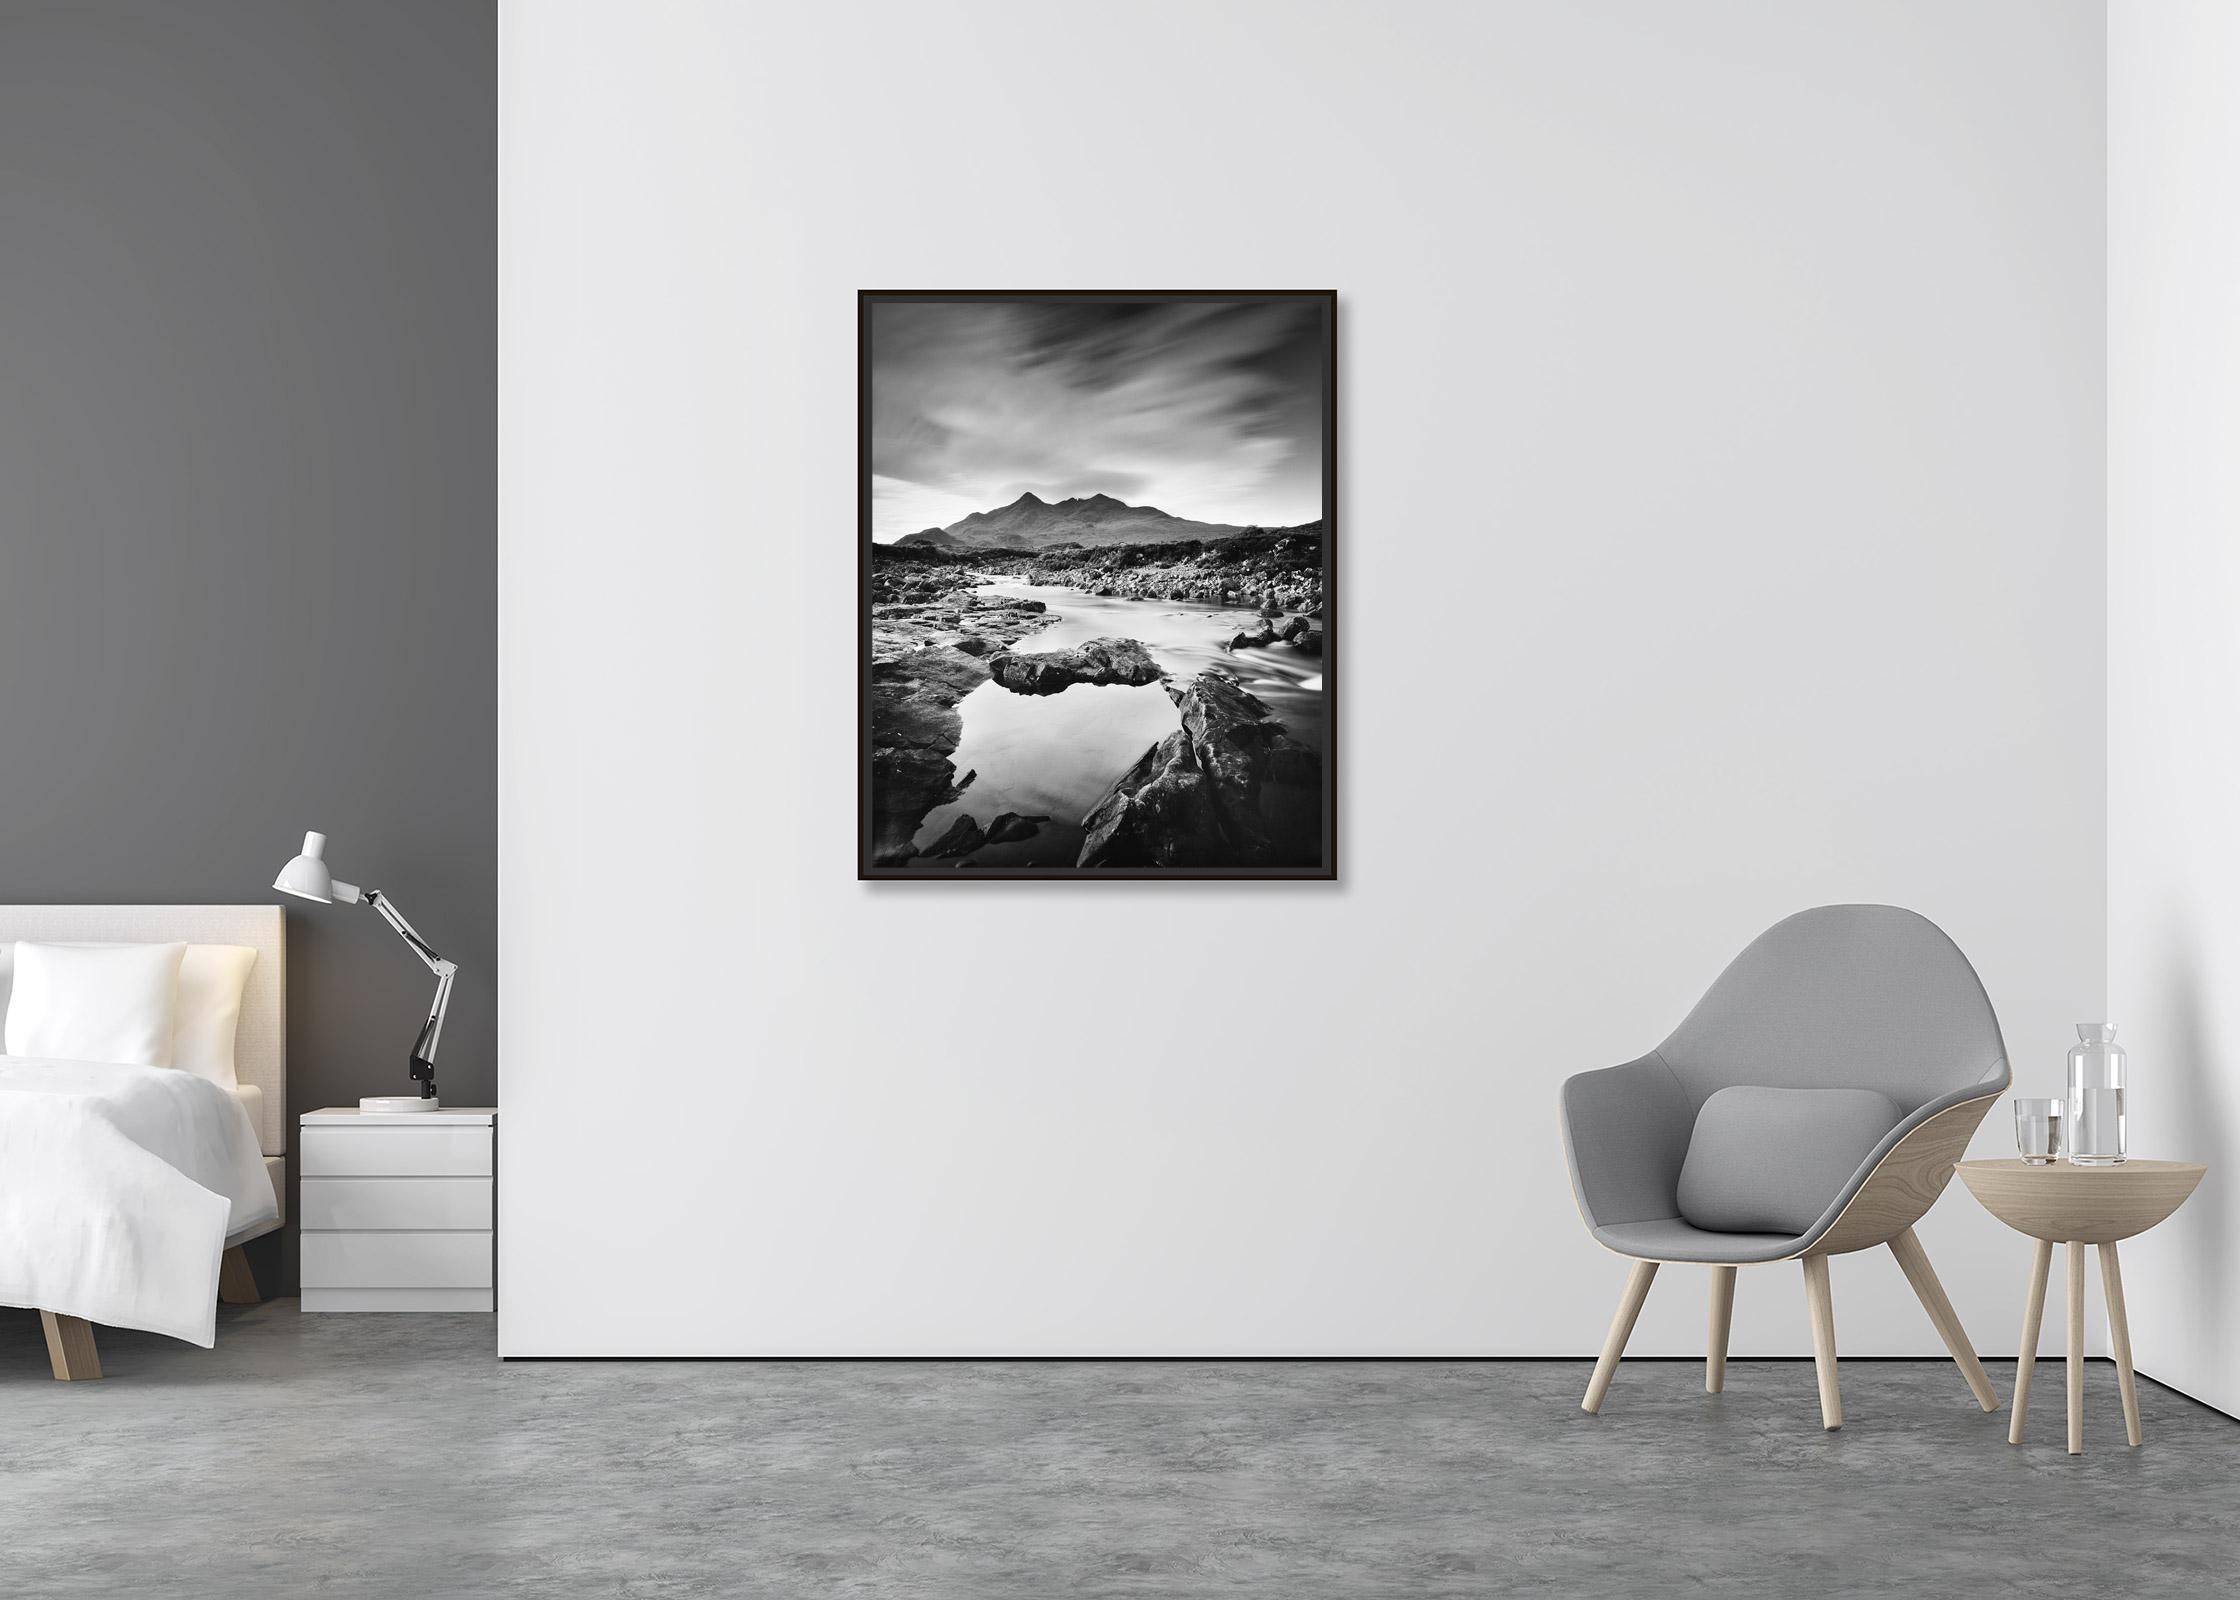 Black Cuillin Hills Mountains Scotland black and white landscape art photography - Contemporain Photograph par Gerald Berghammer